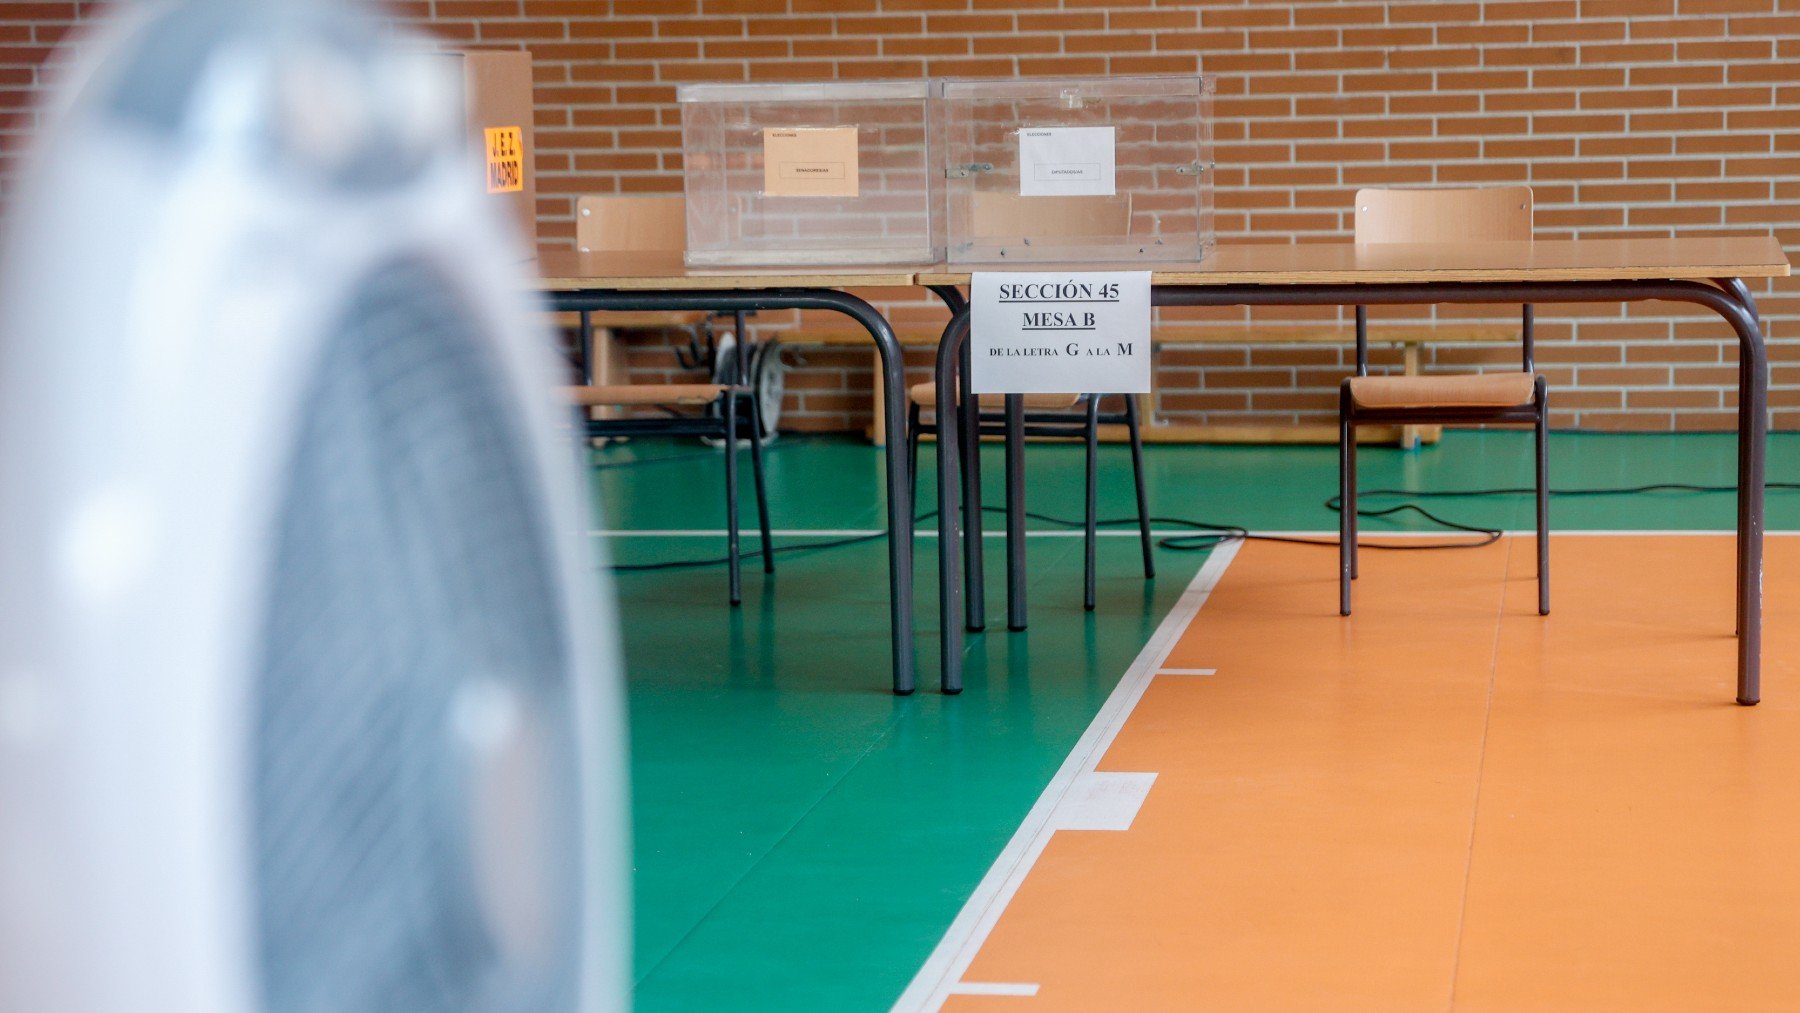 Una mesa electoral, preparada para las elecciones generales del 23J. (Europa Press)